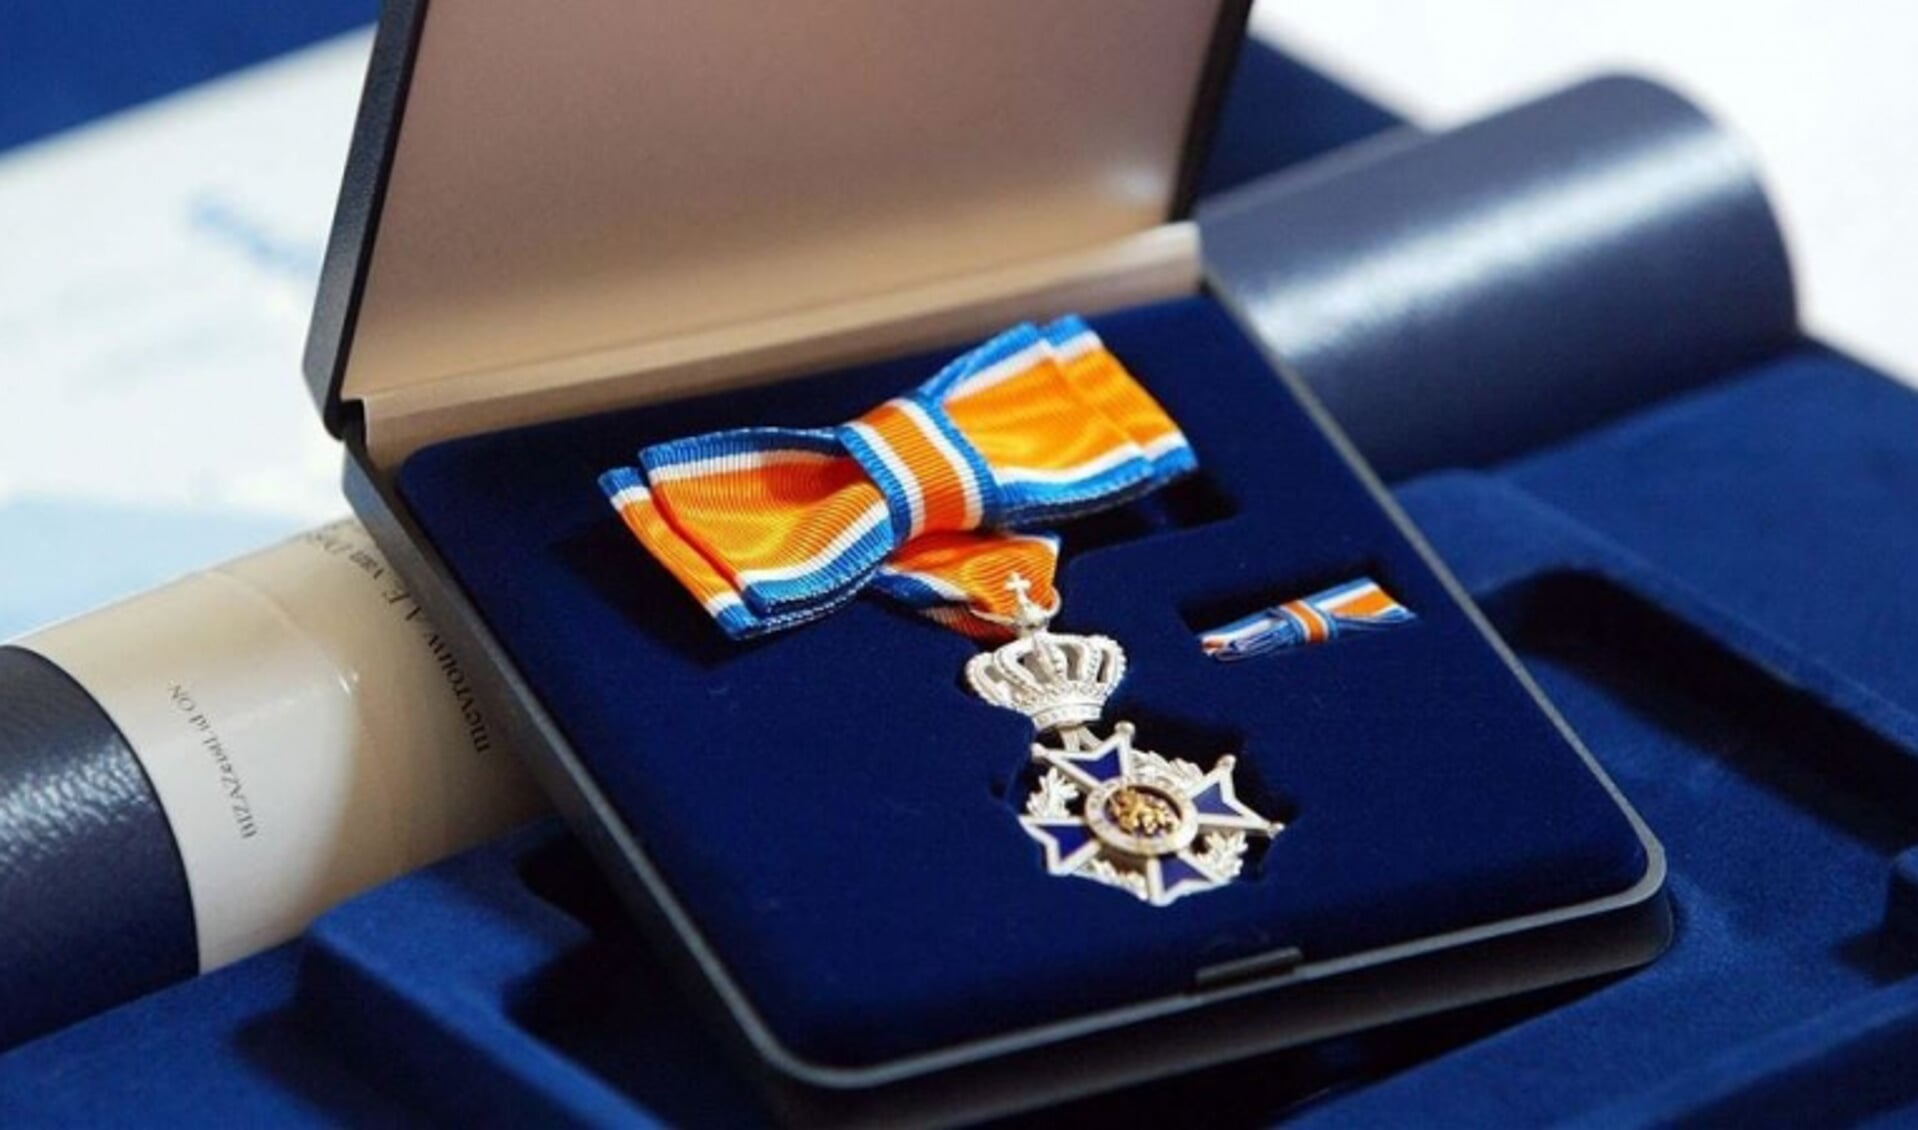 De heer Joop van Haalen uit Cuijk is benoemd tot Lid in de Orde van Oranje Nassau.